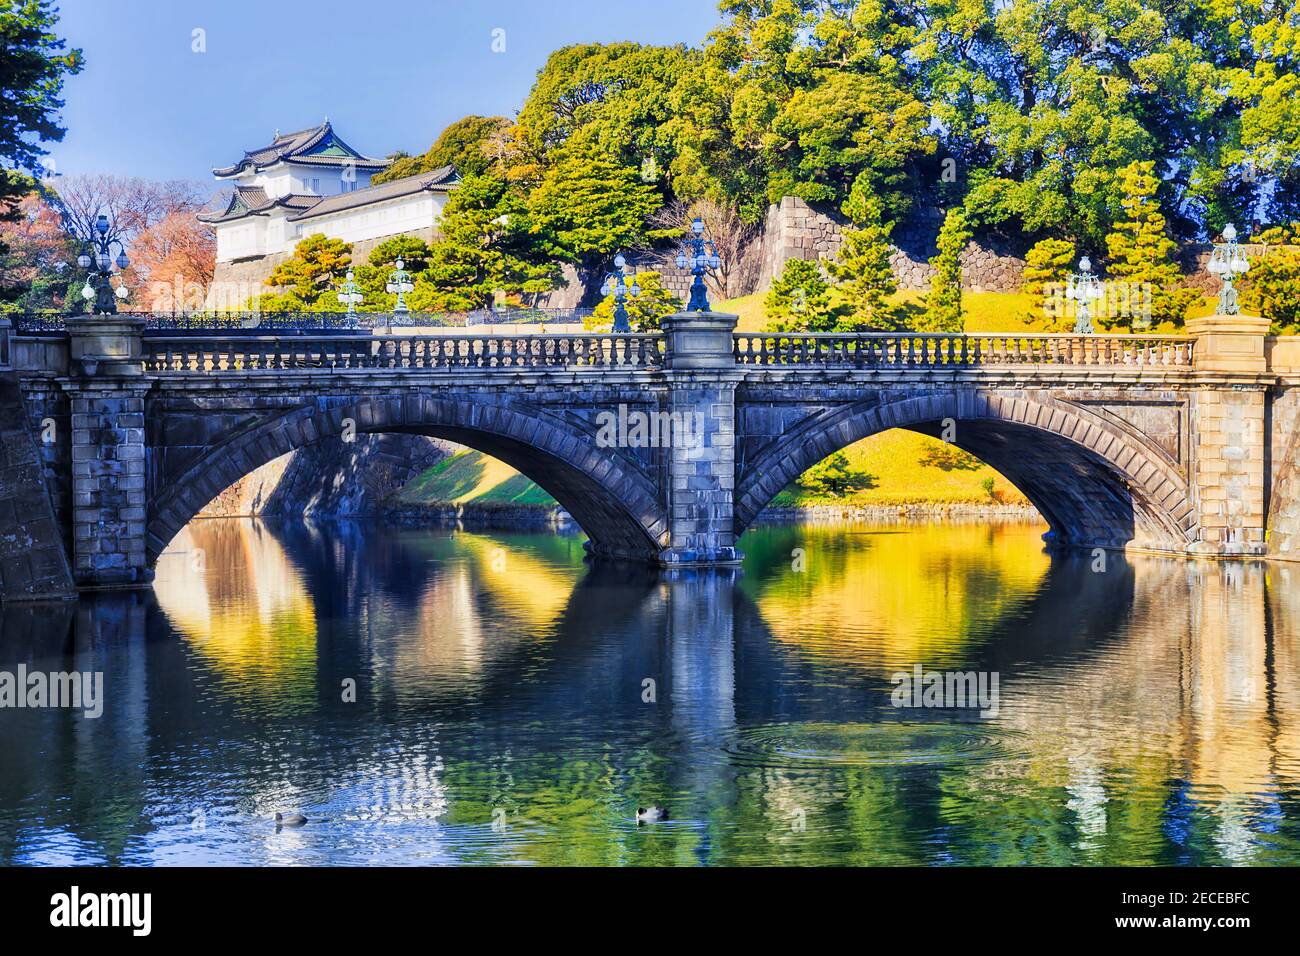 Vieux pont en pierre traversant le fossé autour du palais impérial de Tokyo, au Japon, par une journée ensoleillée. Banque D'Images